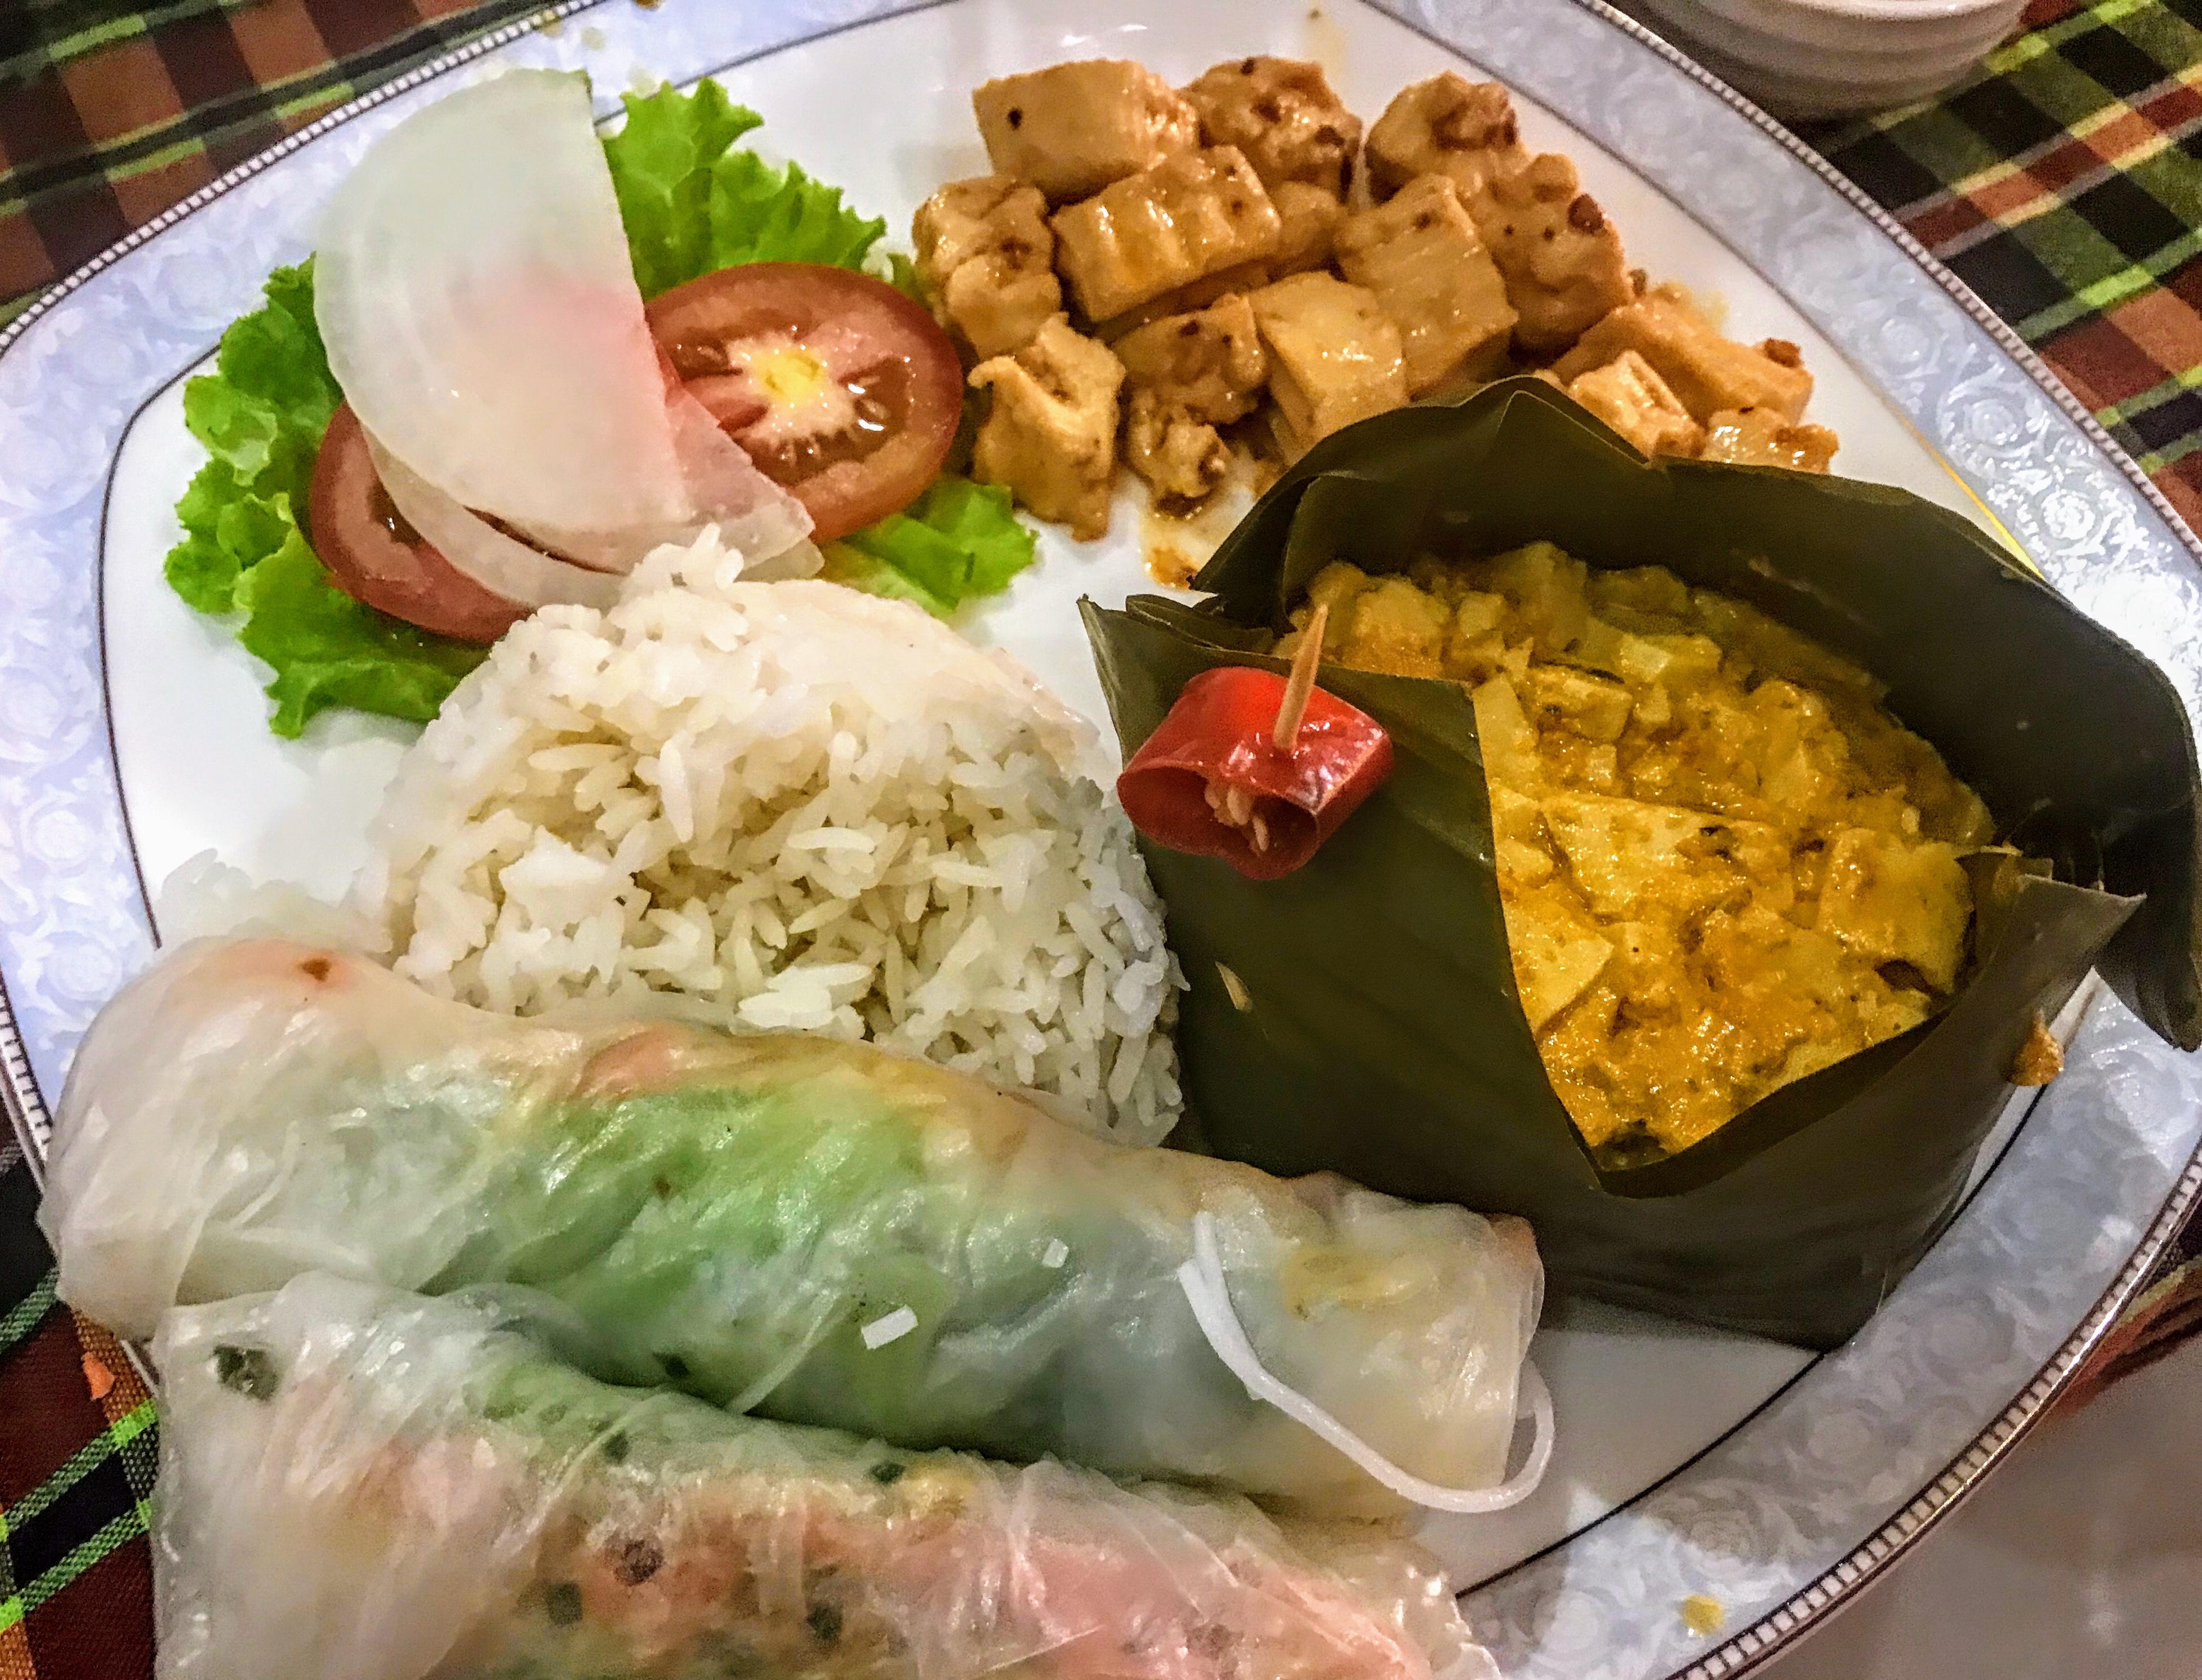 Traditional Cambodian food, Battambang, Cambodia 